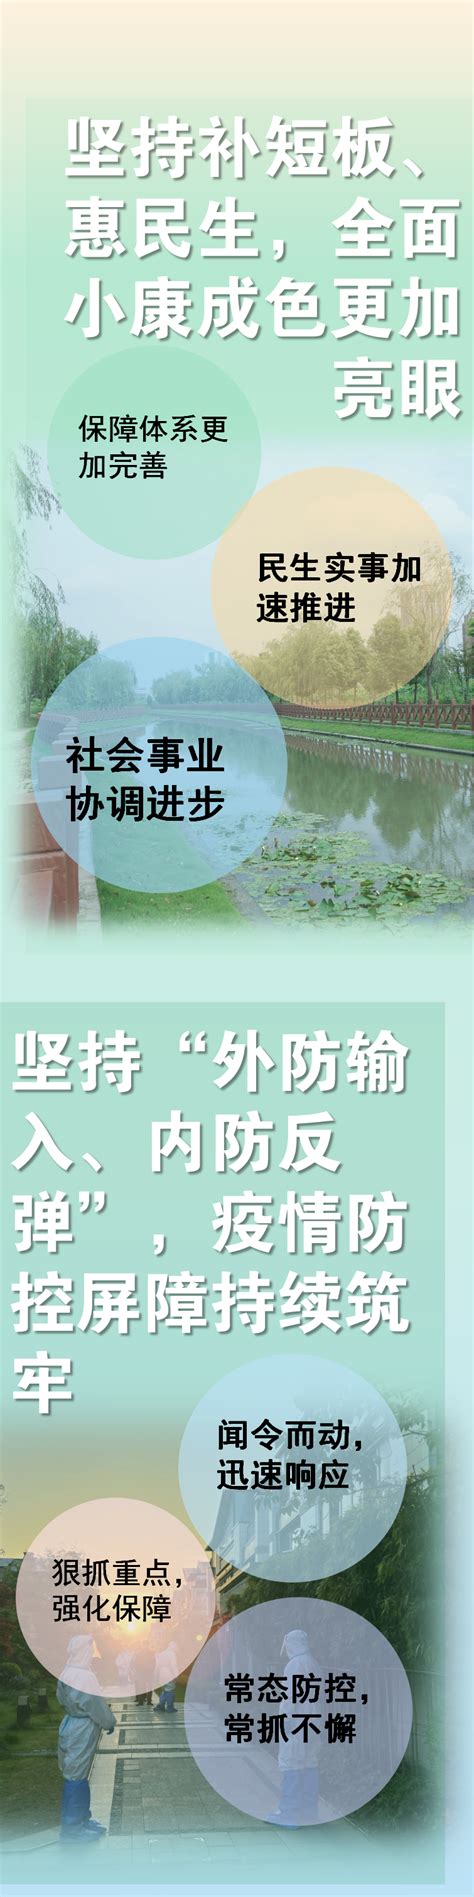 松江区洞泾镇2021年最新空间总体规划-昆山搜狐焦点